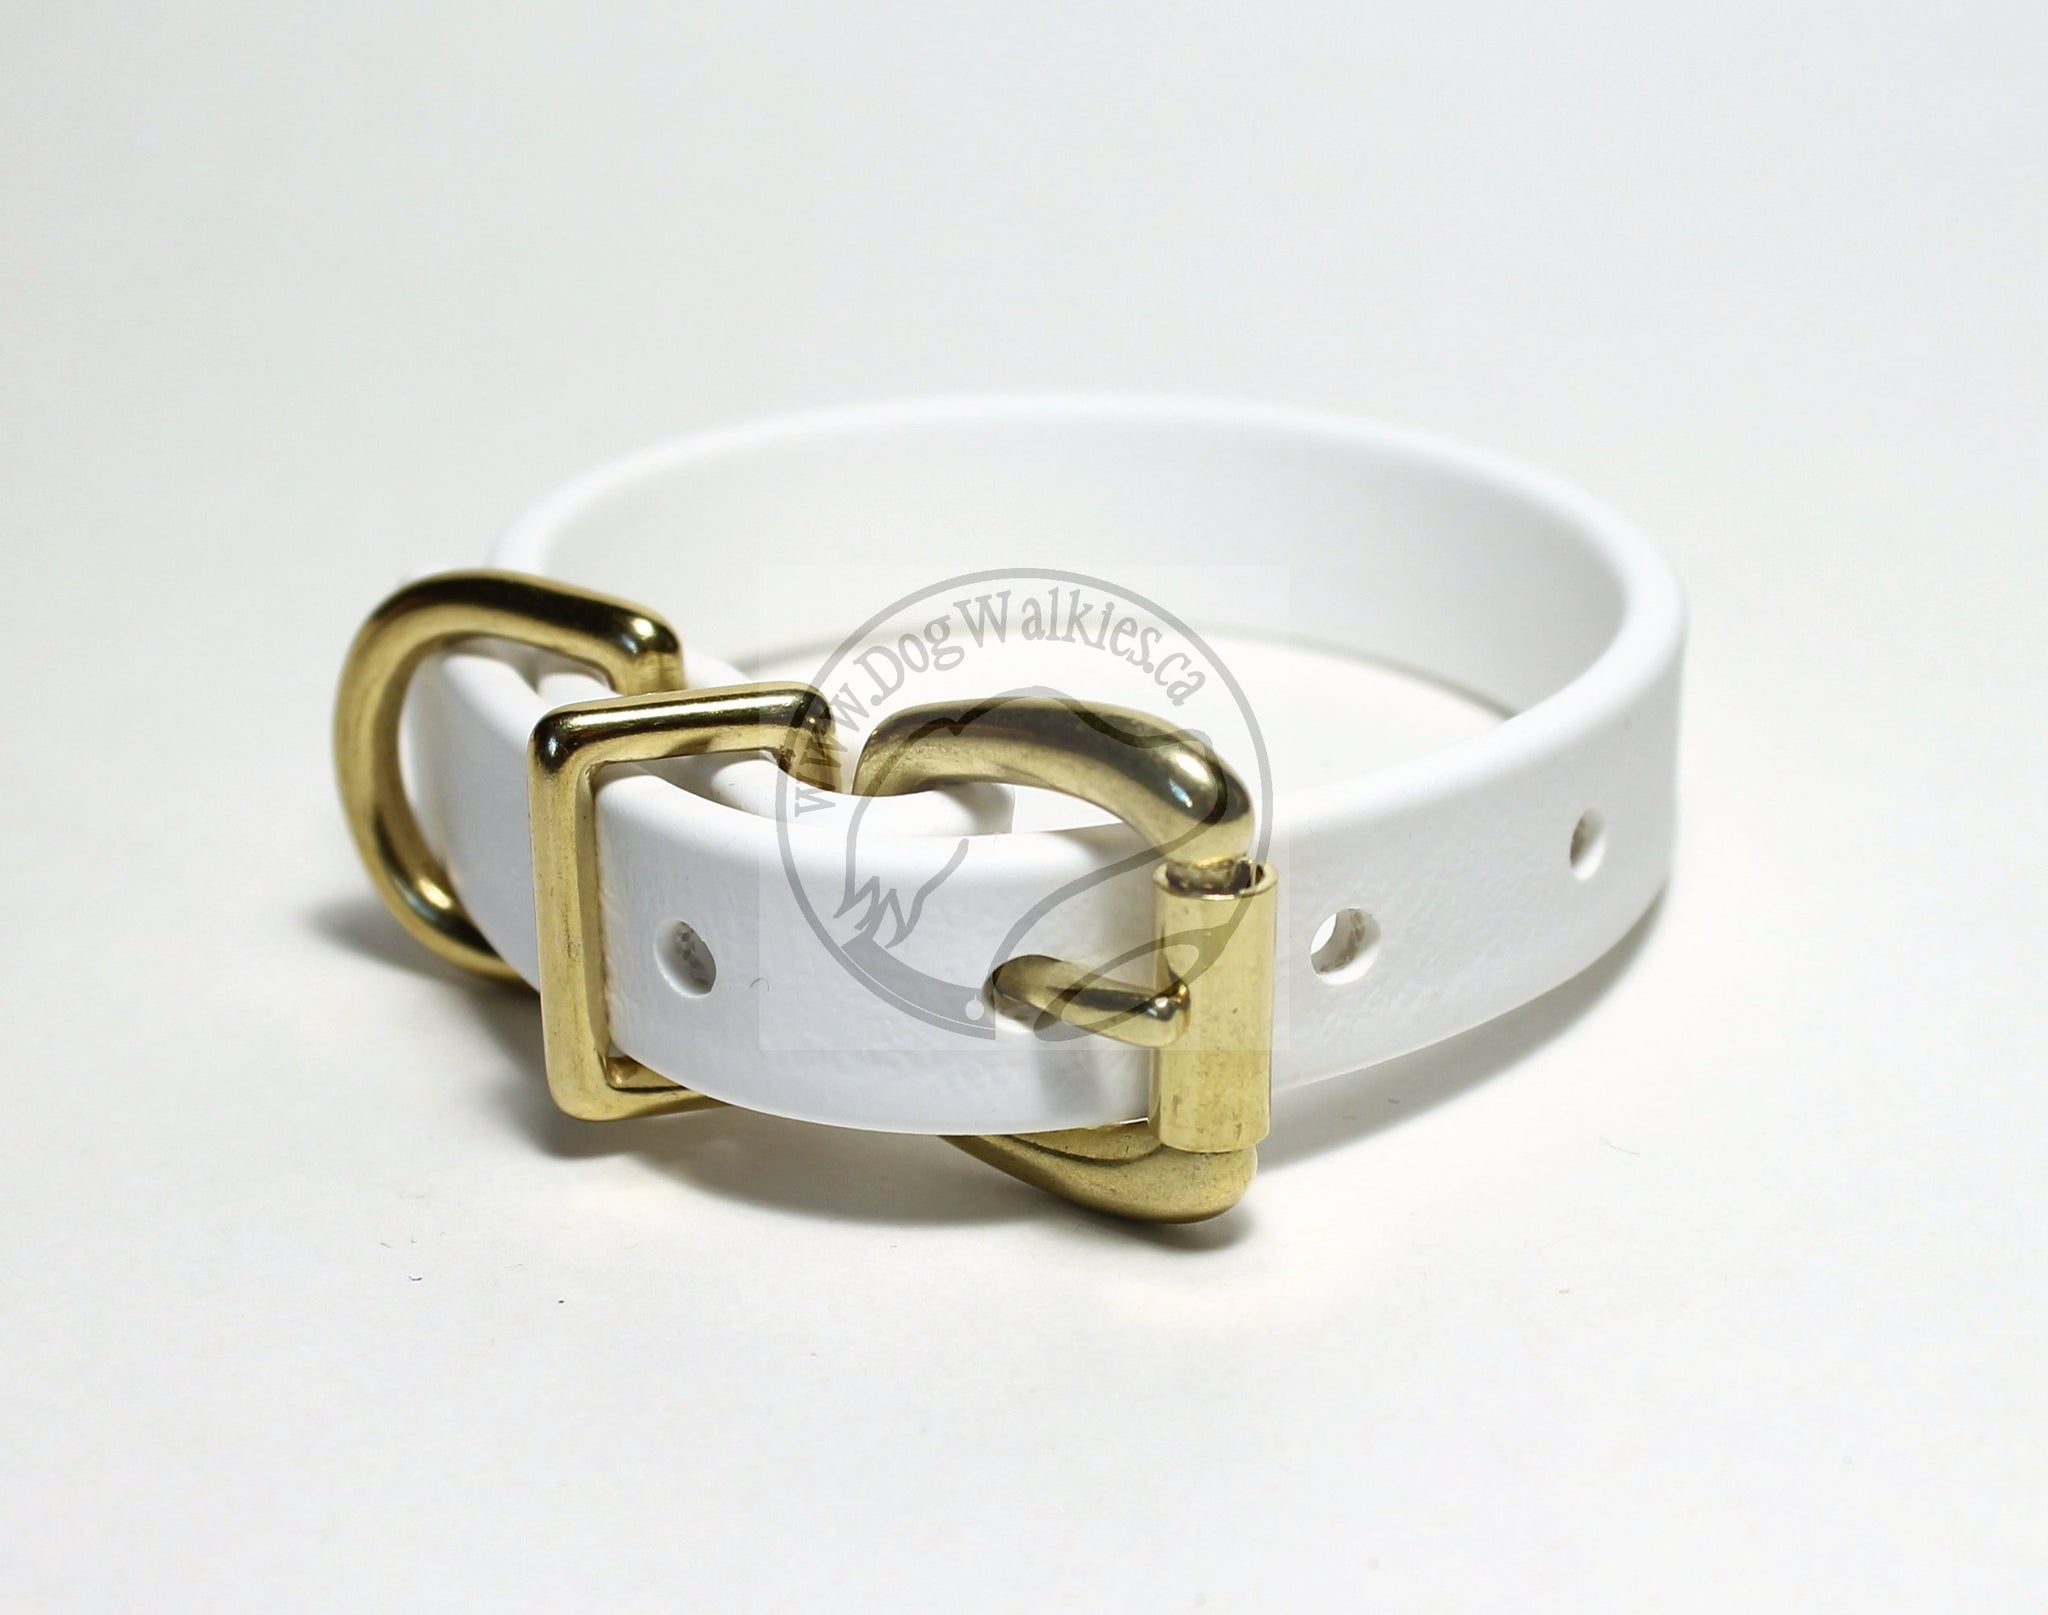 Snow White Biothane Dog Collar - 5/8"(16mm) wide